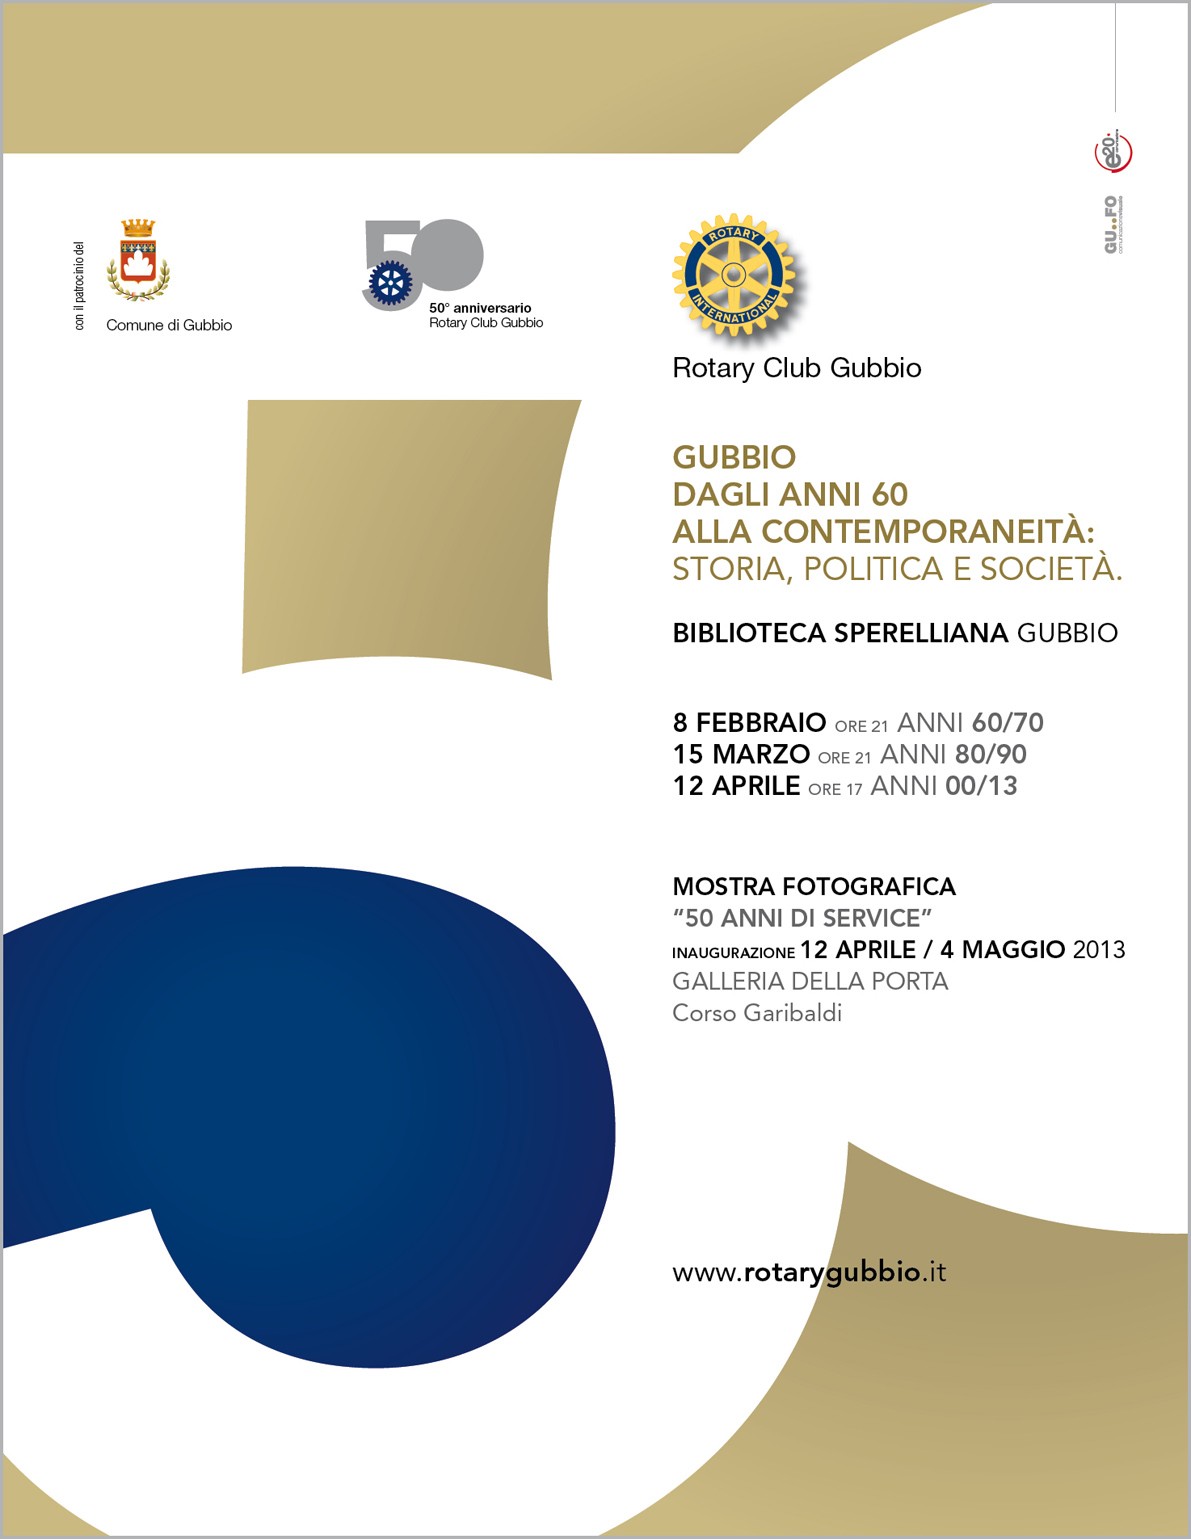 Il Rotary Club Gubbio: appuntamento per tavola rotonda di venerdi 15 marzo in occasione del cinquantenario della fondazione del rotary club  di Gubbio 1963 – 2013.